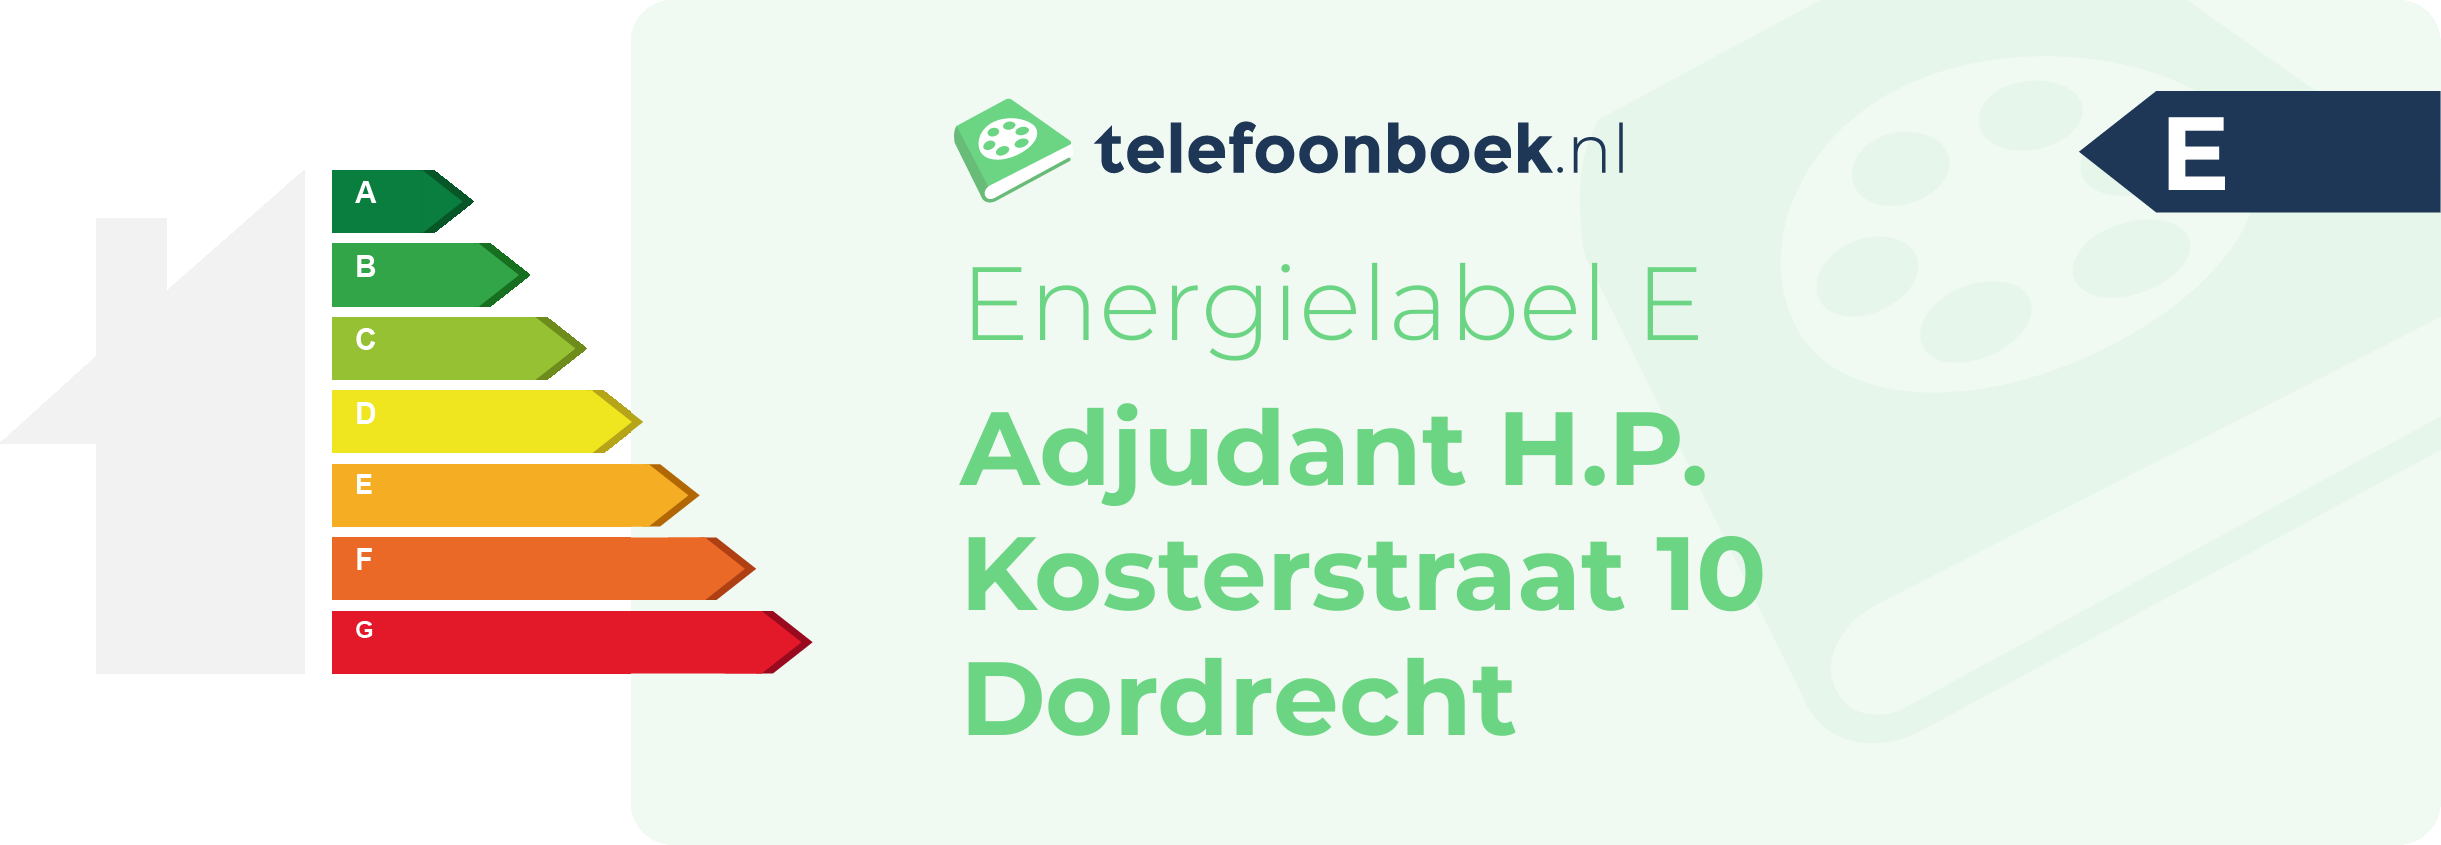 Energielabel Adjudant H.P. Kosterstraat 10 Dordrecht